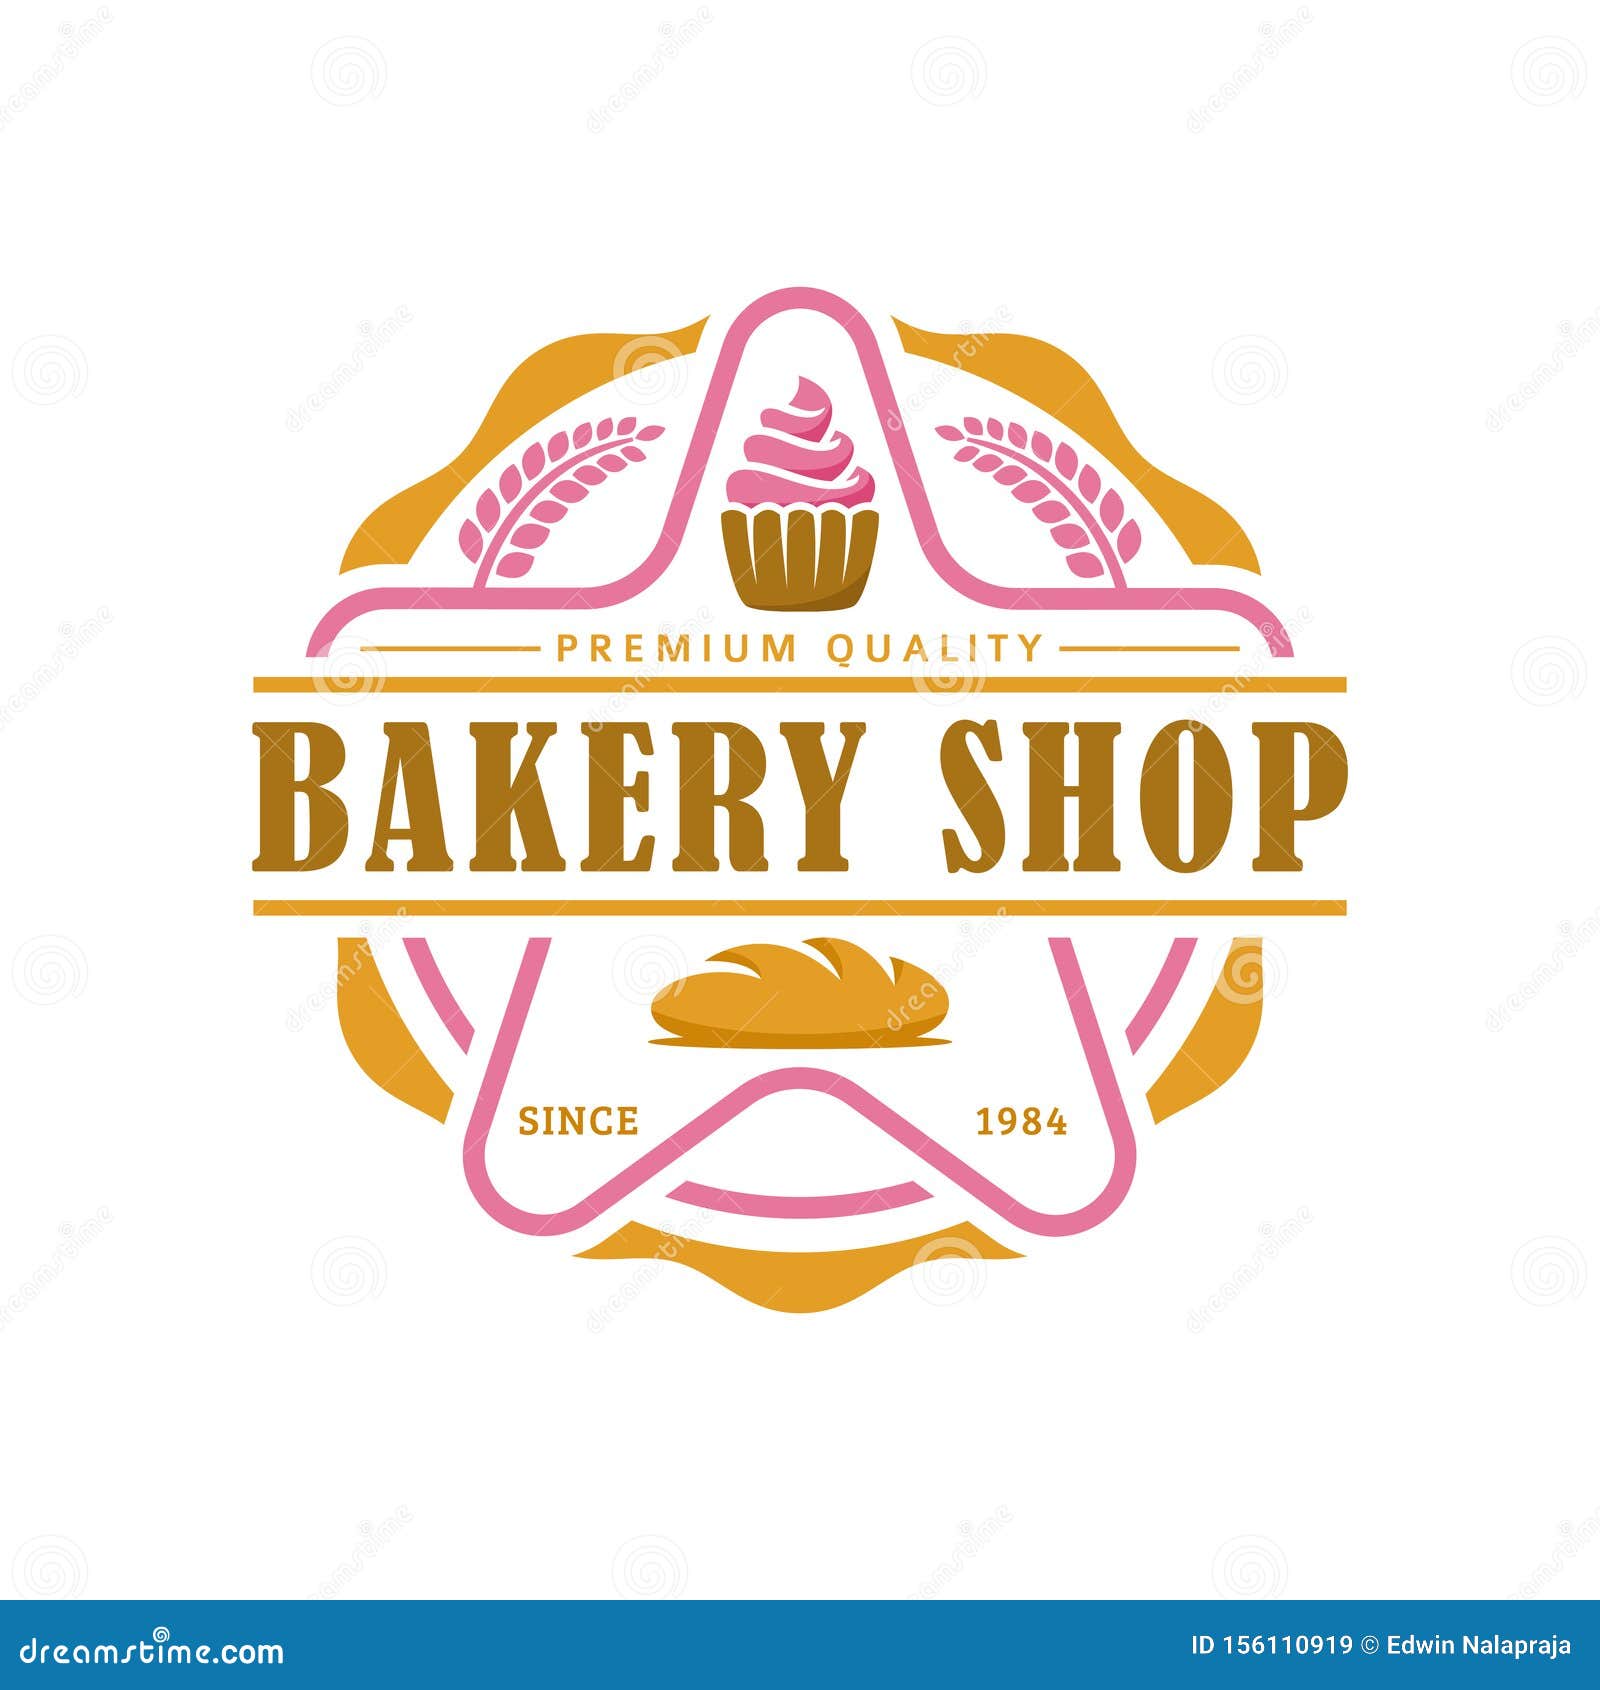 Bakery Logo Template, Vector Illustration. Bakery Shop Emblem, Vintage ...